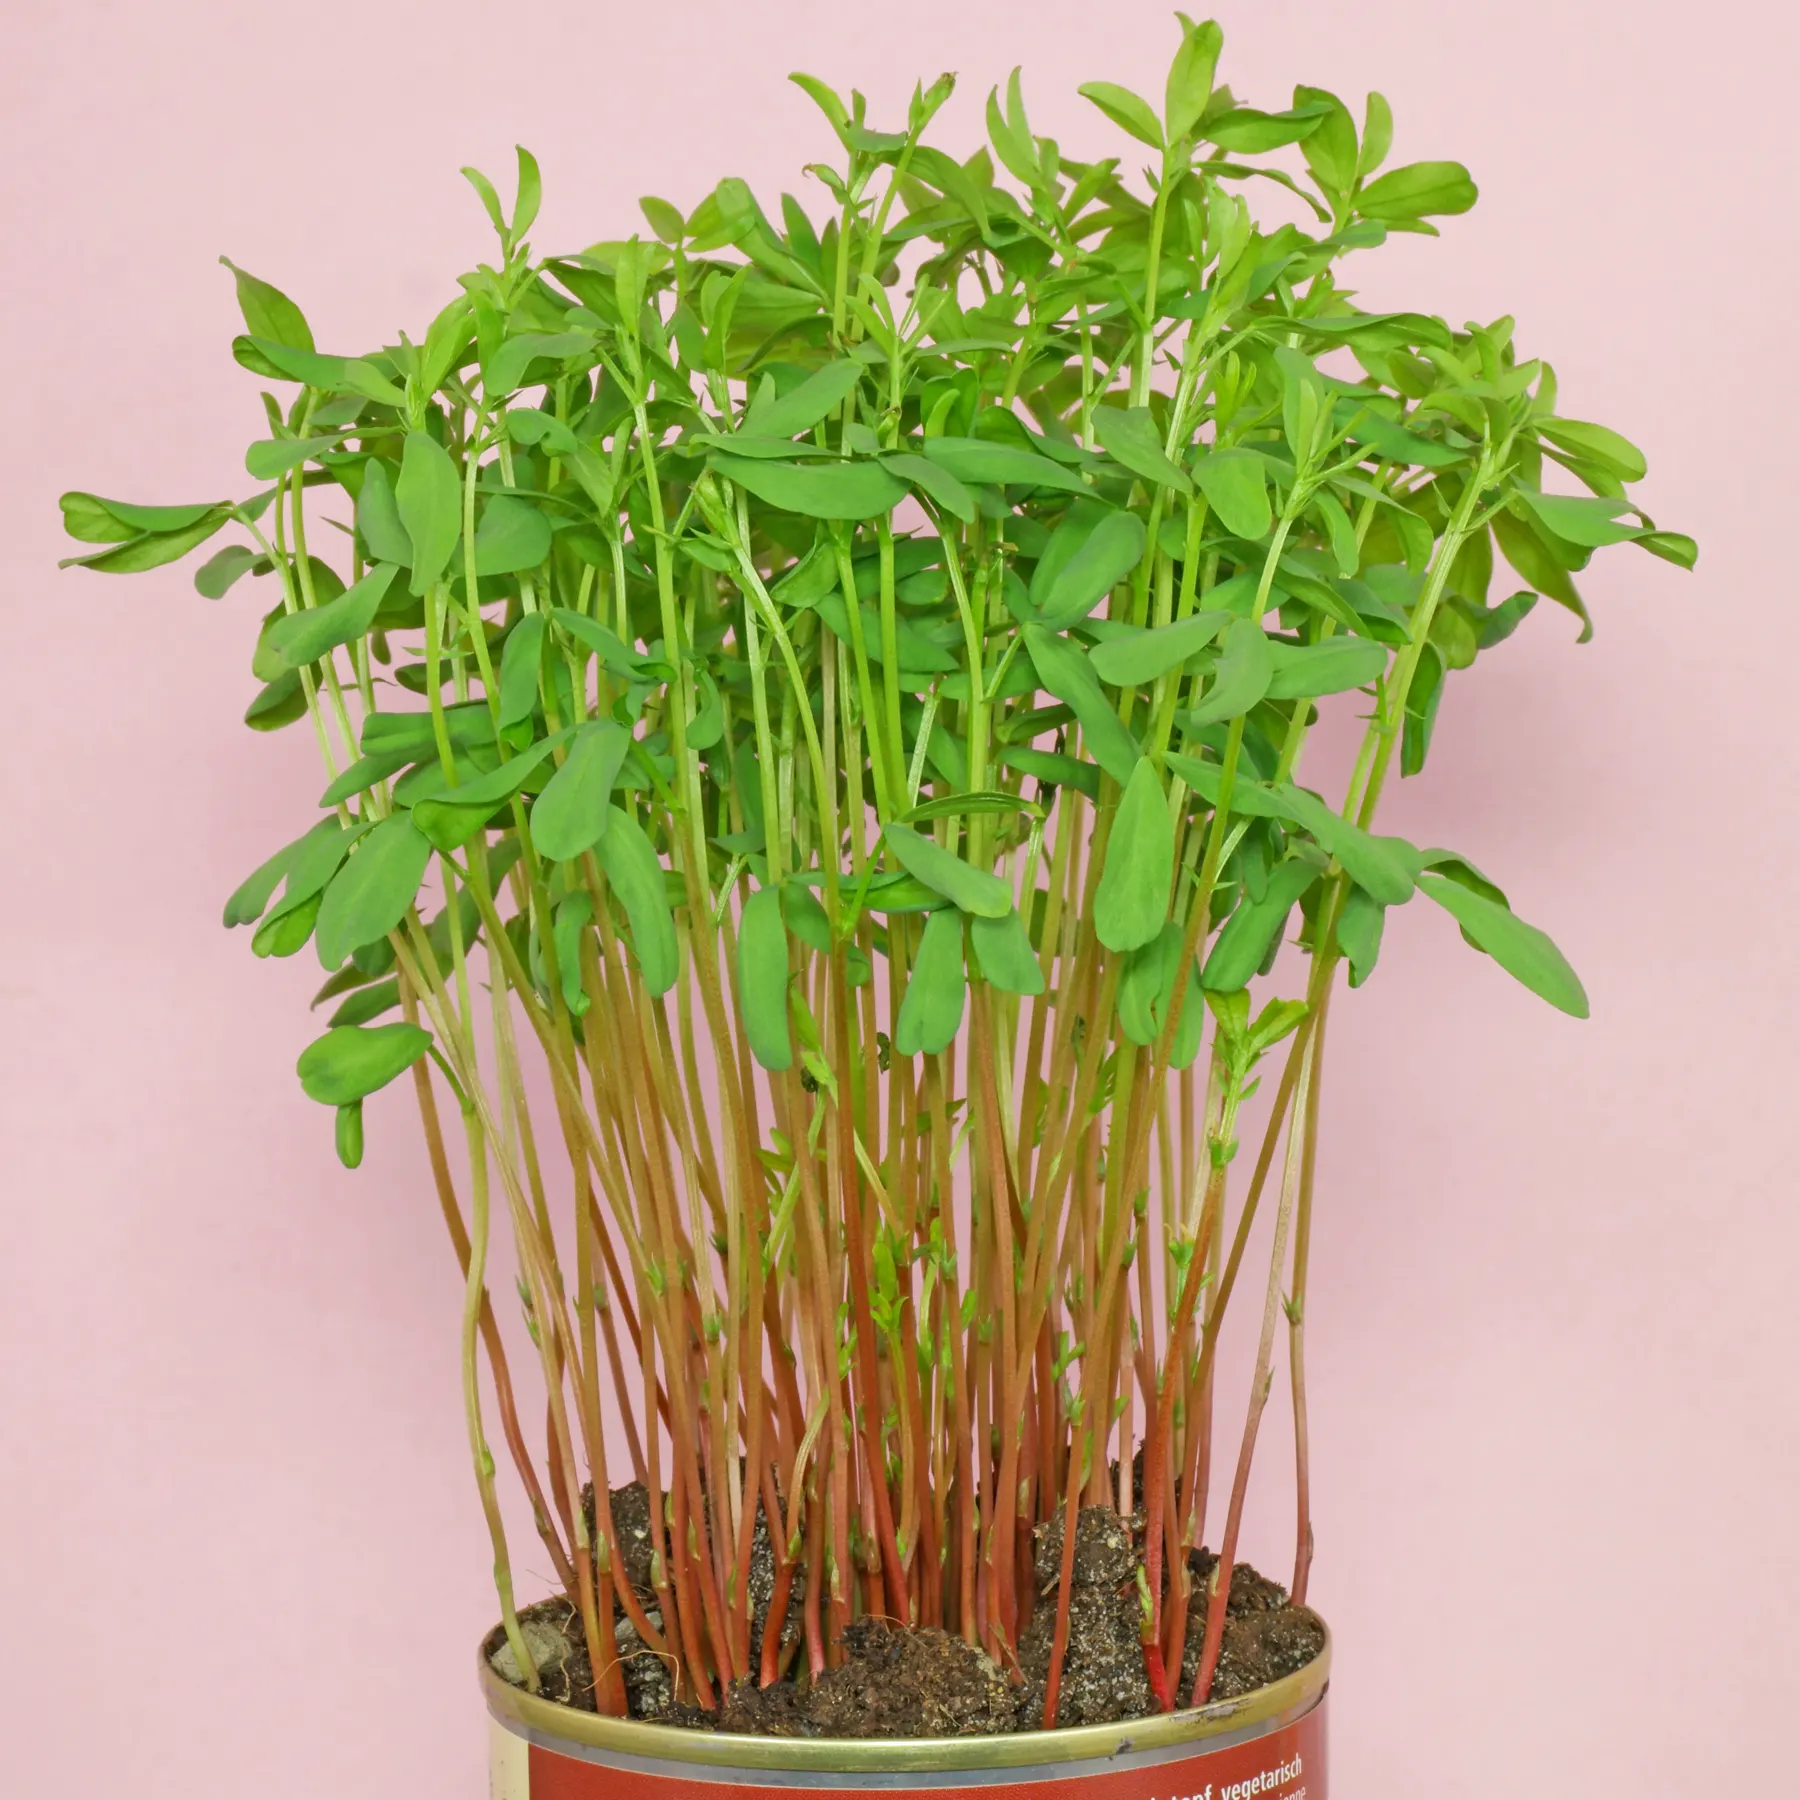 lentil plants